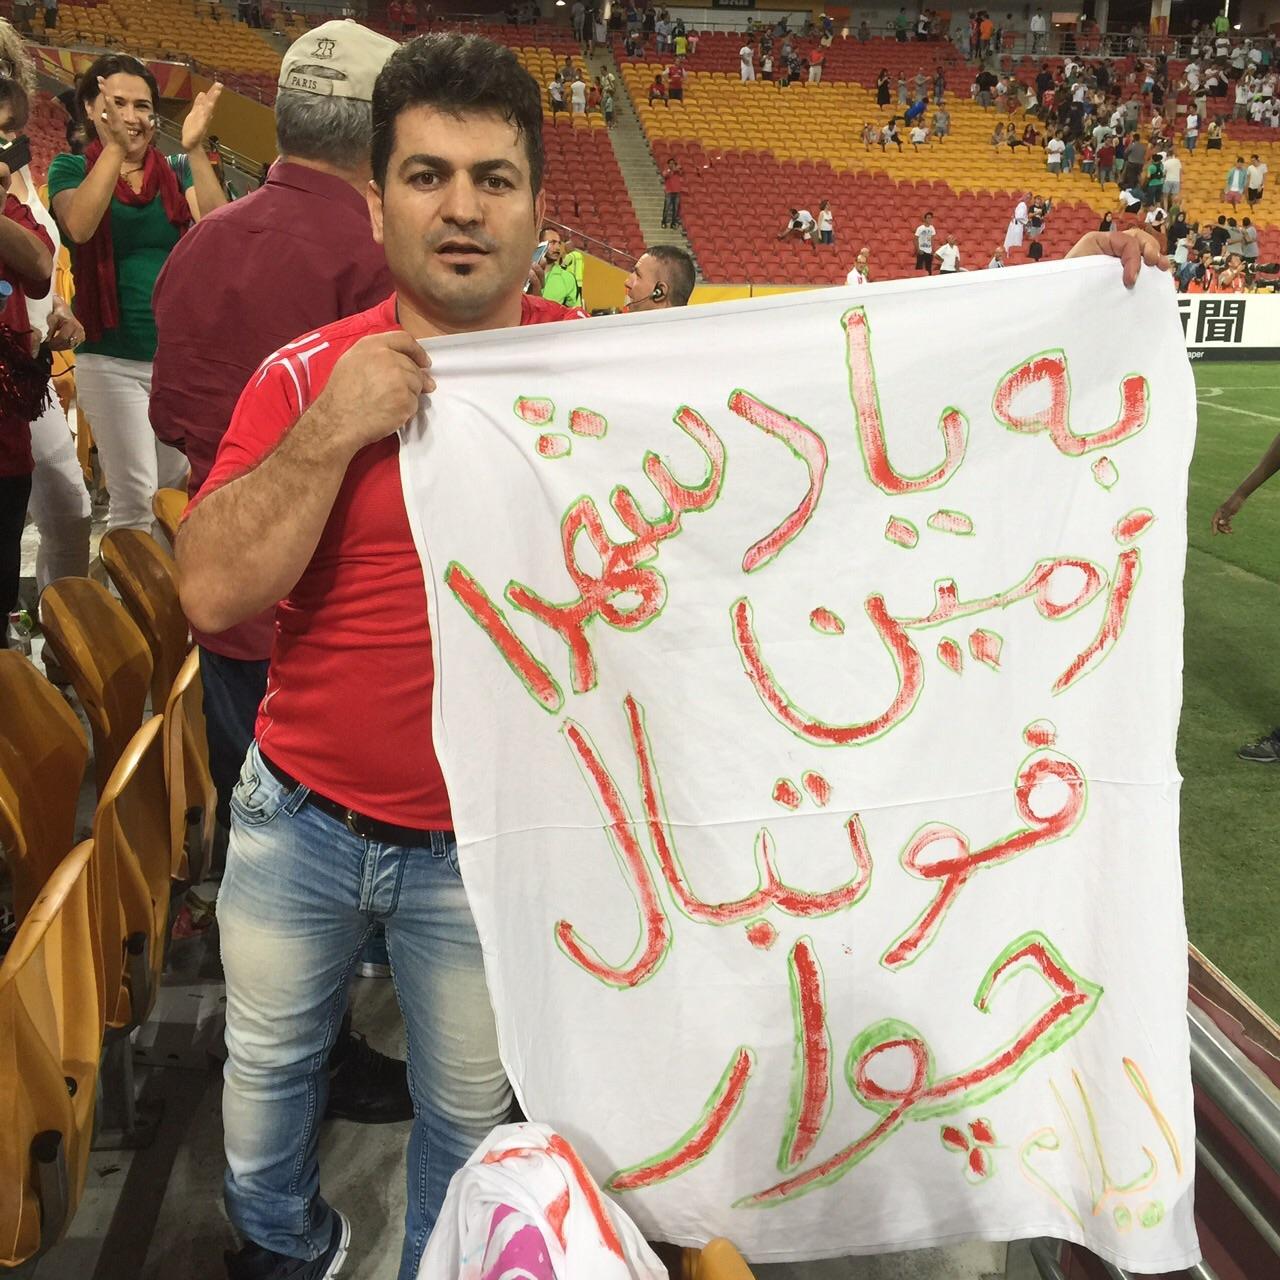 رخدادی که می تواند نماد عشق و مظلومیت فوتبال بر سر در فیفا باشد